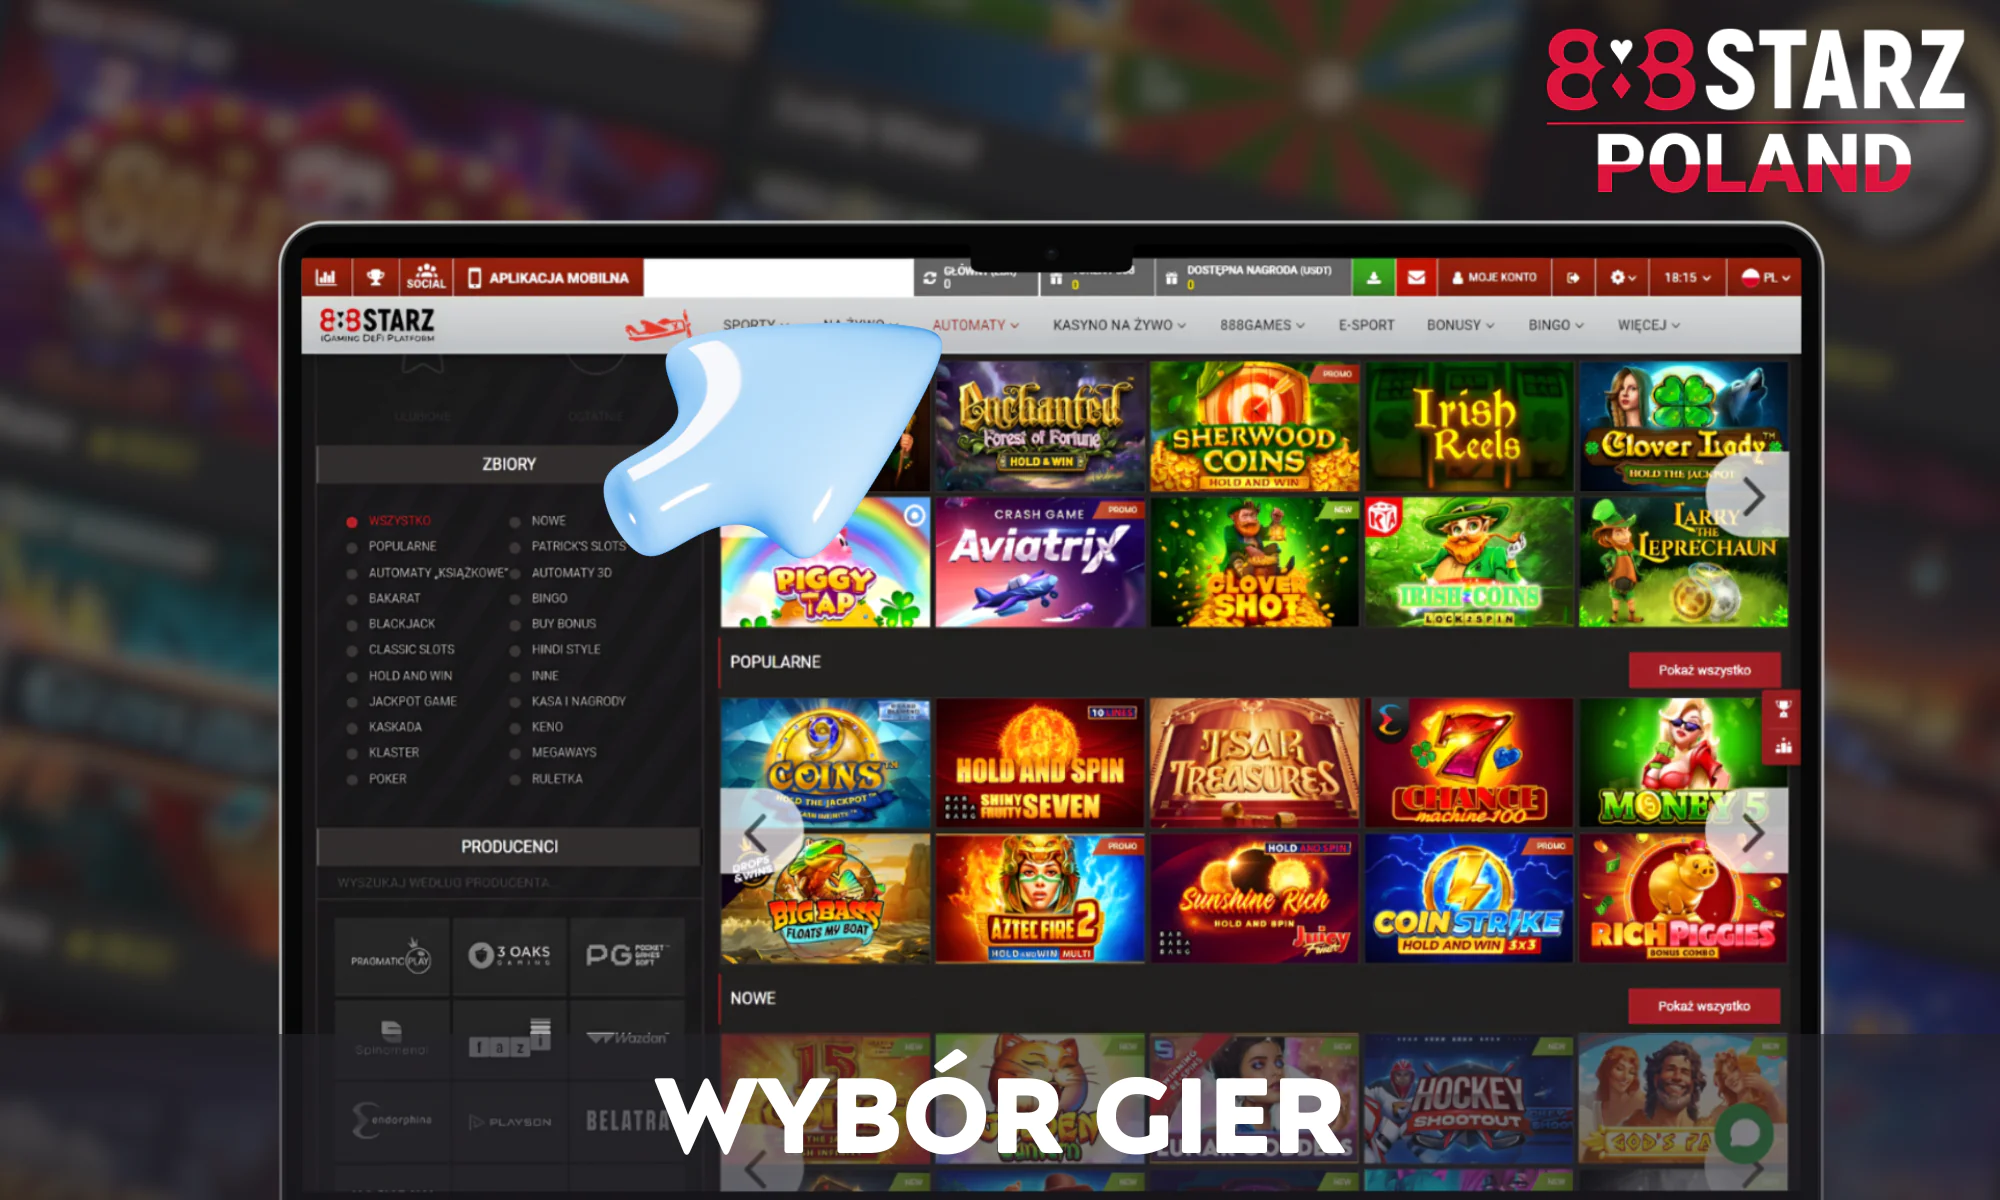 Kasyno 888Starz oferuje ponad 3000 gier kasynowych online